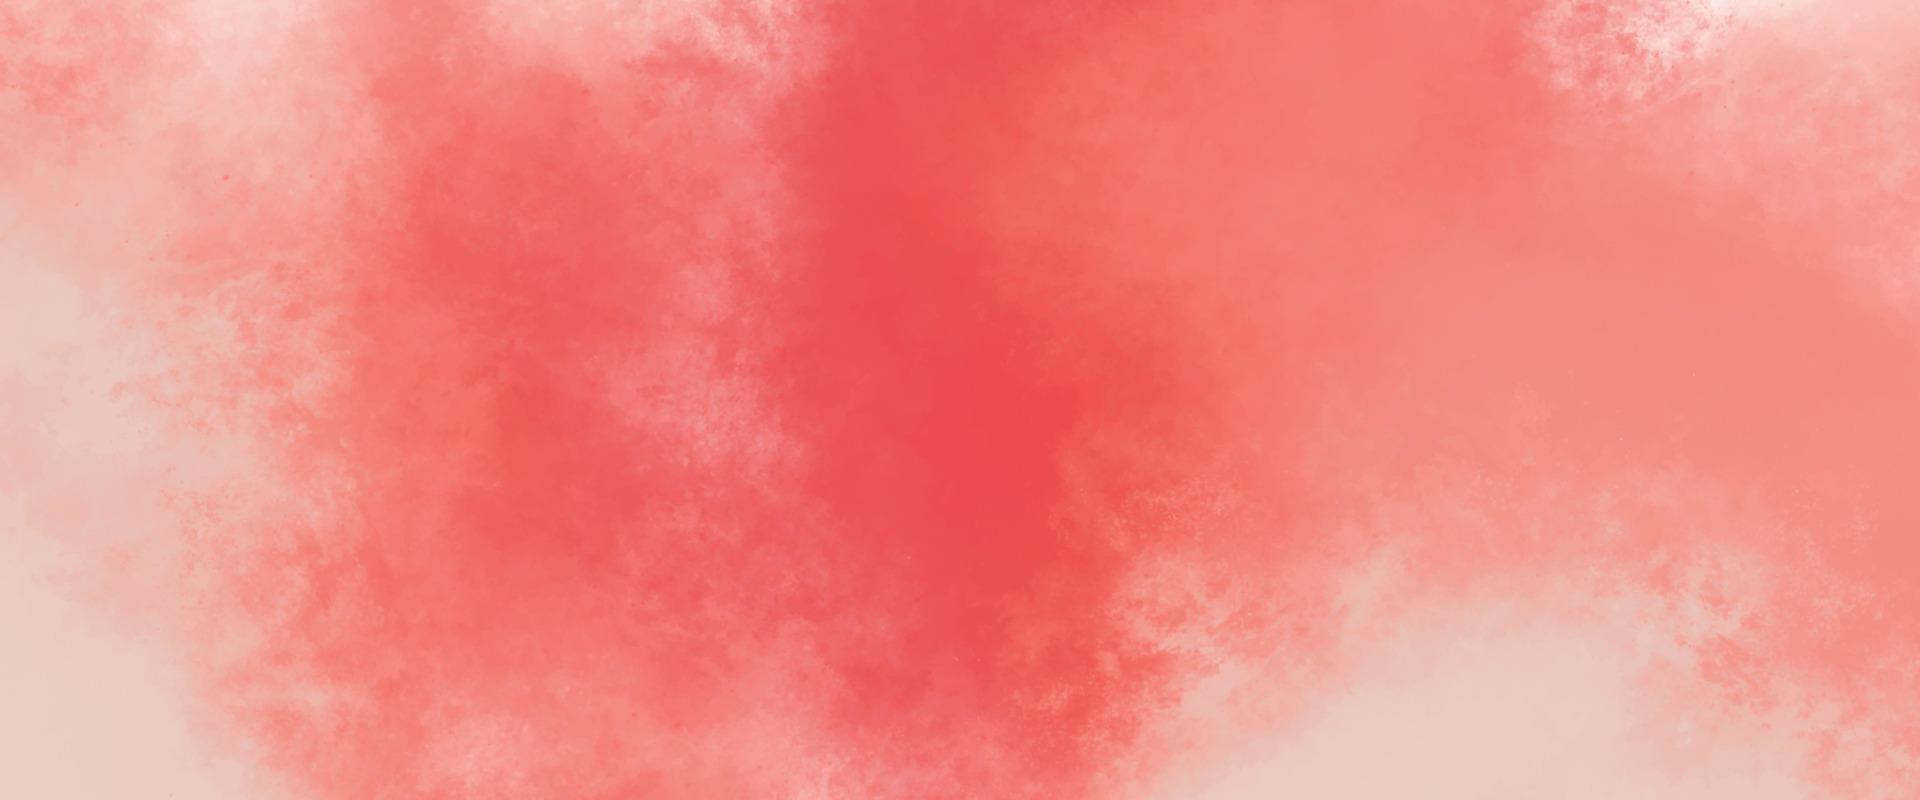 fundo rosa com espaço. fantasia suave papel aquarela rosa claro texturizado. fundo aquarela rosa suave para seu projeto, conceito de fundo aquarela, vetor. vetor